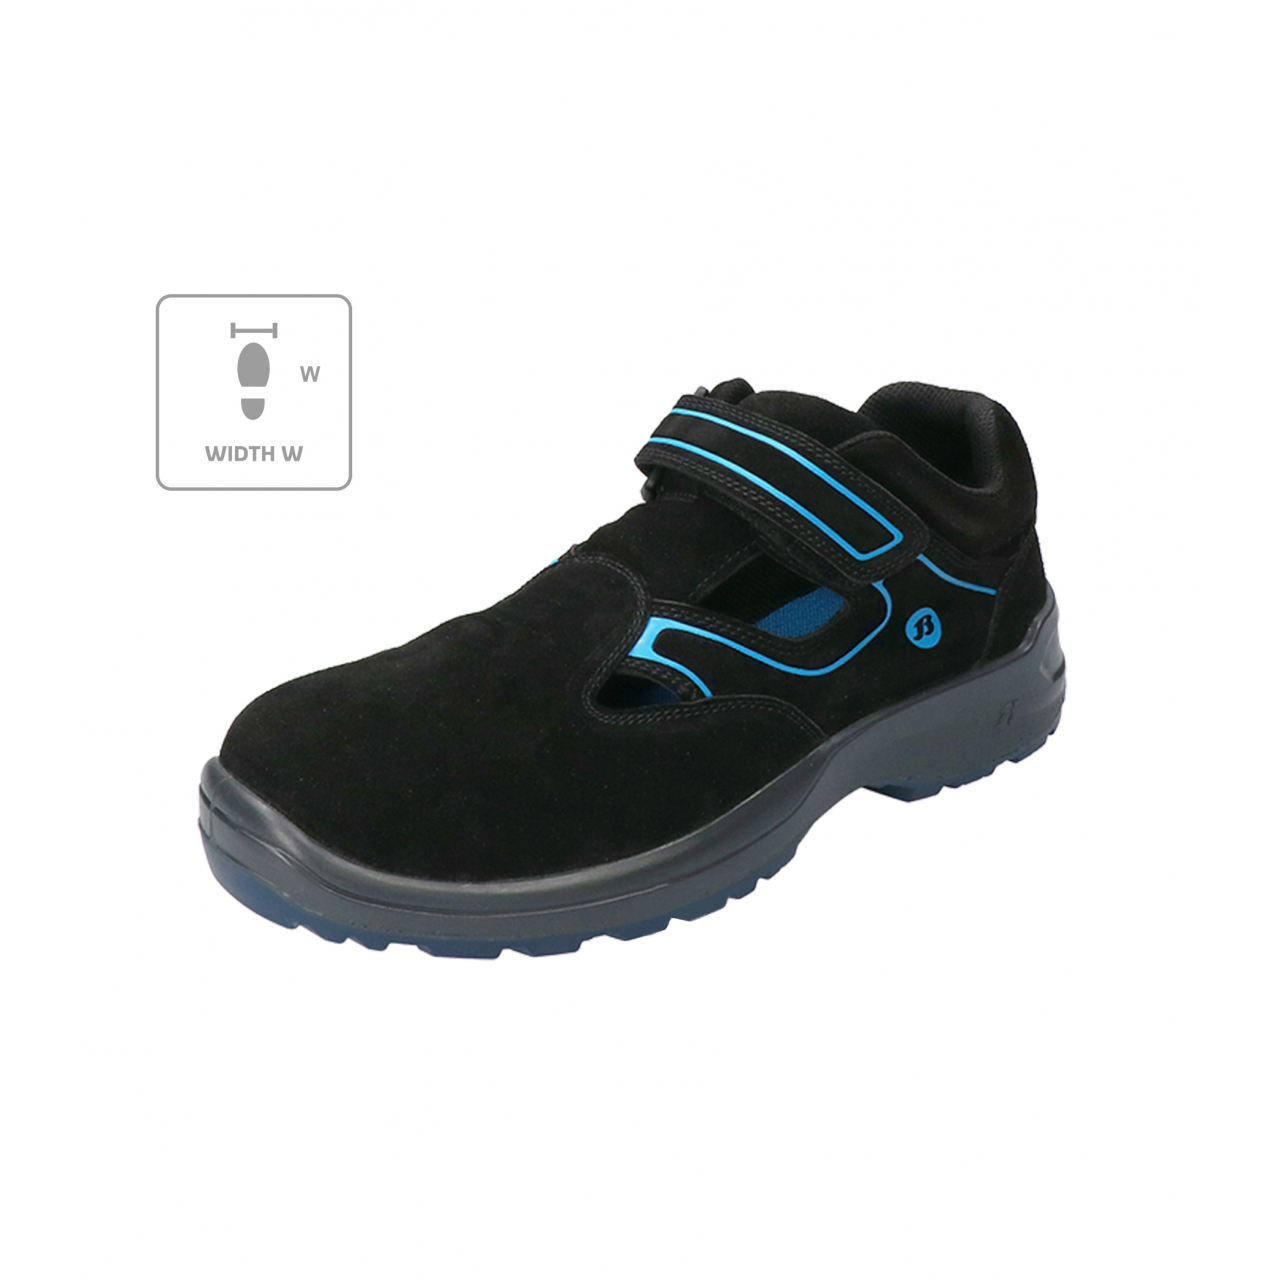 Sandále Bata Industrials Falcon ESD W - černé-modré, 44